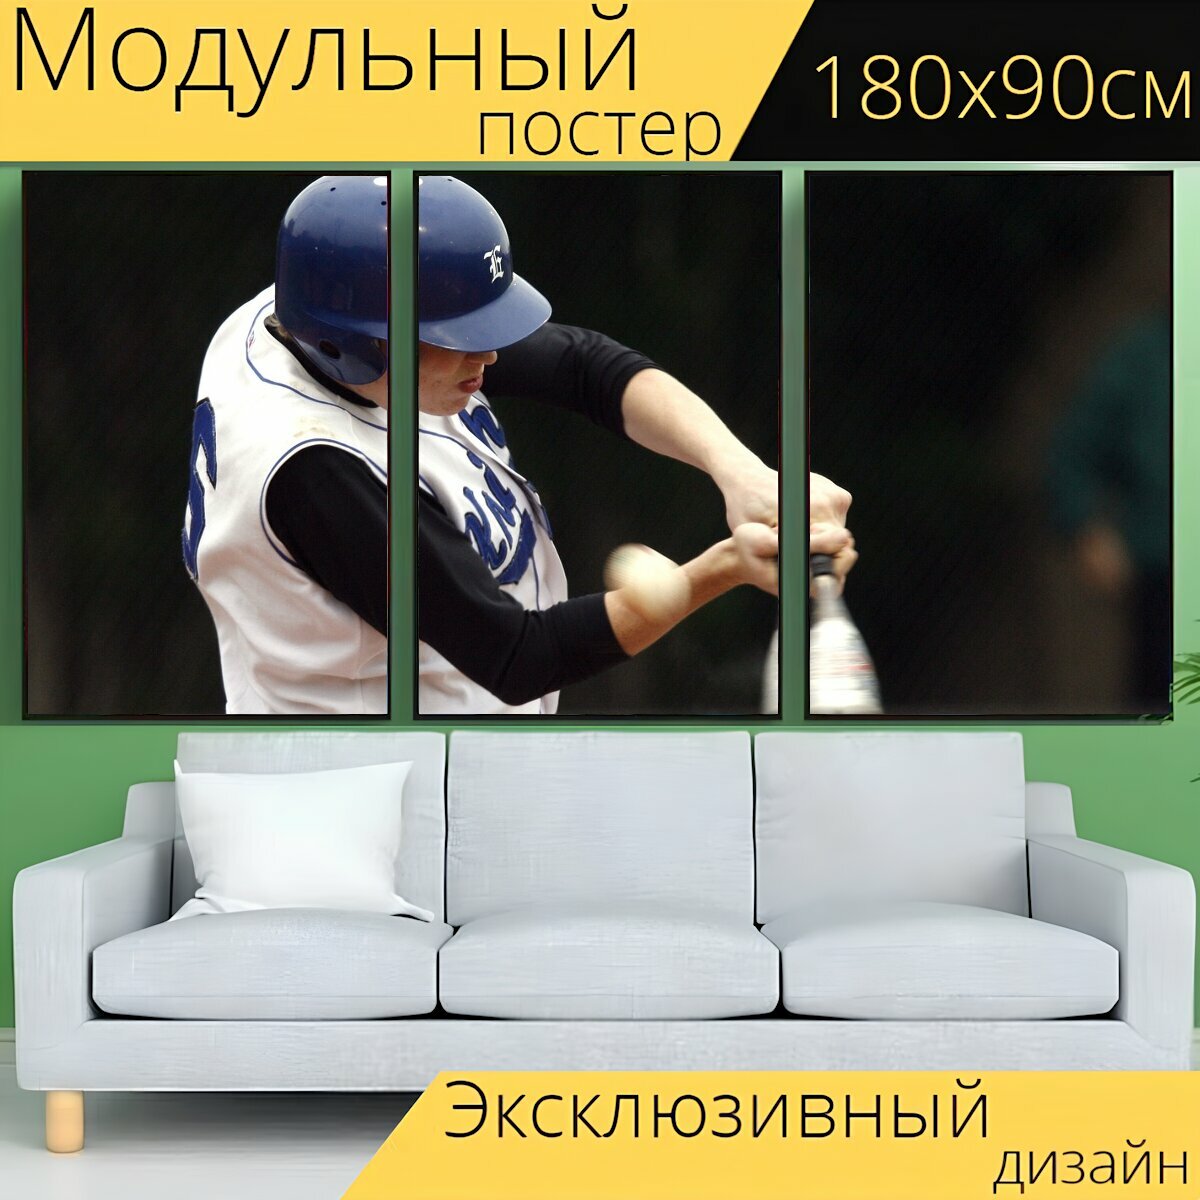 Модульный постер "Бейсбол игрок в бейсбол тесто" 180 x 90 см. для интерьера